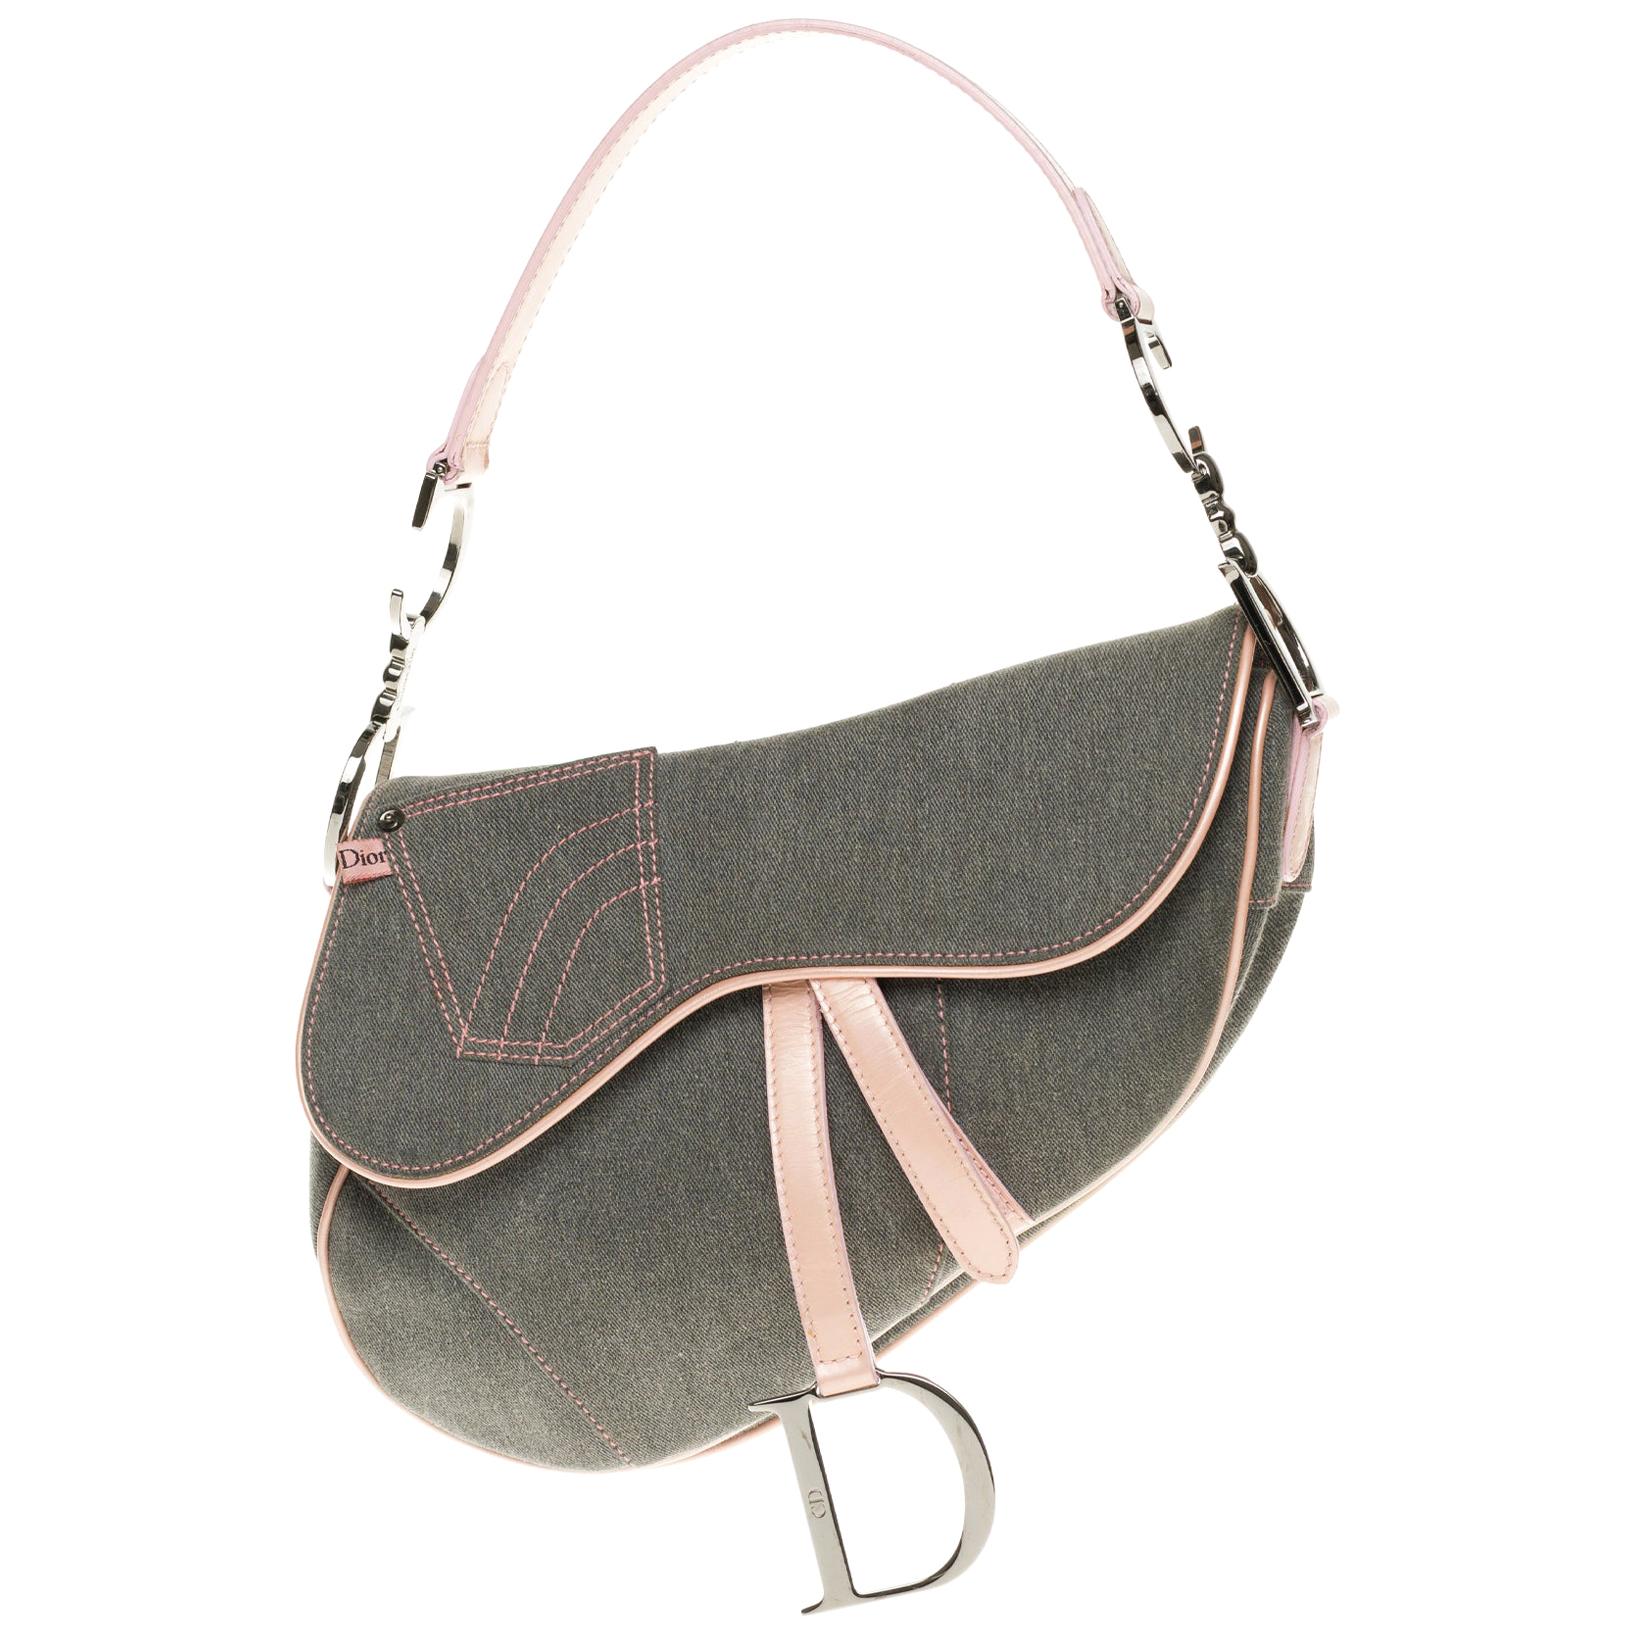 Christian Dior Saddle shoulder bag in blue denim and pink patent leather